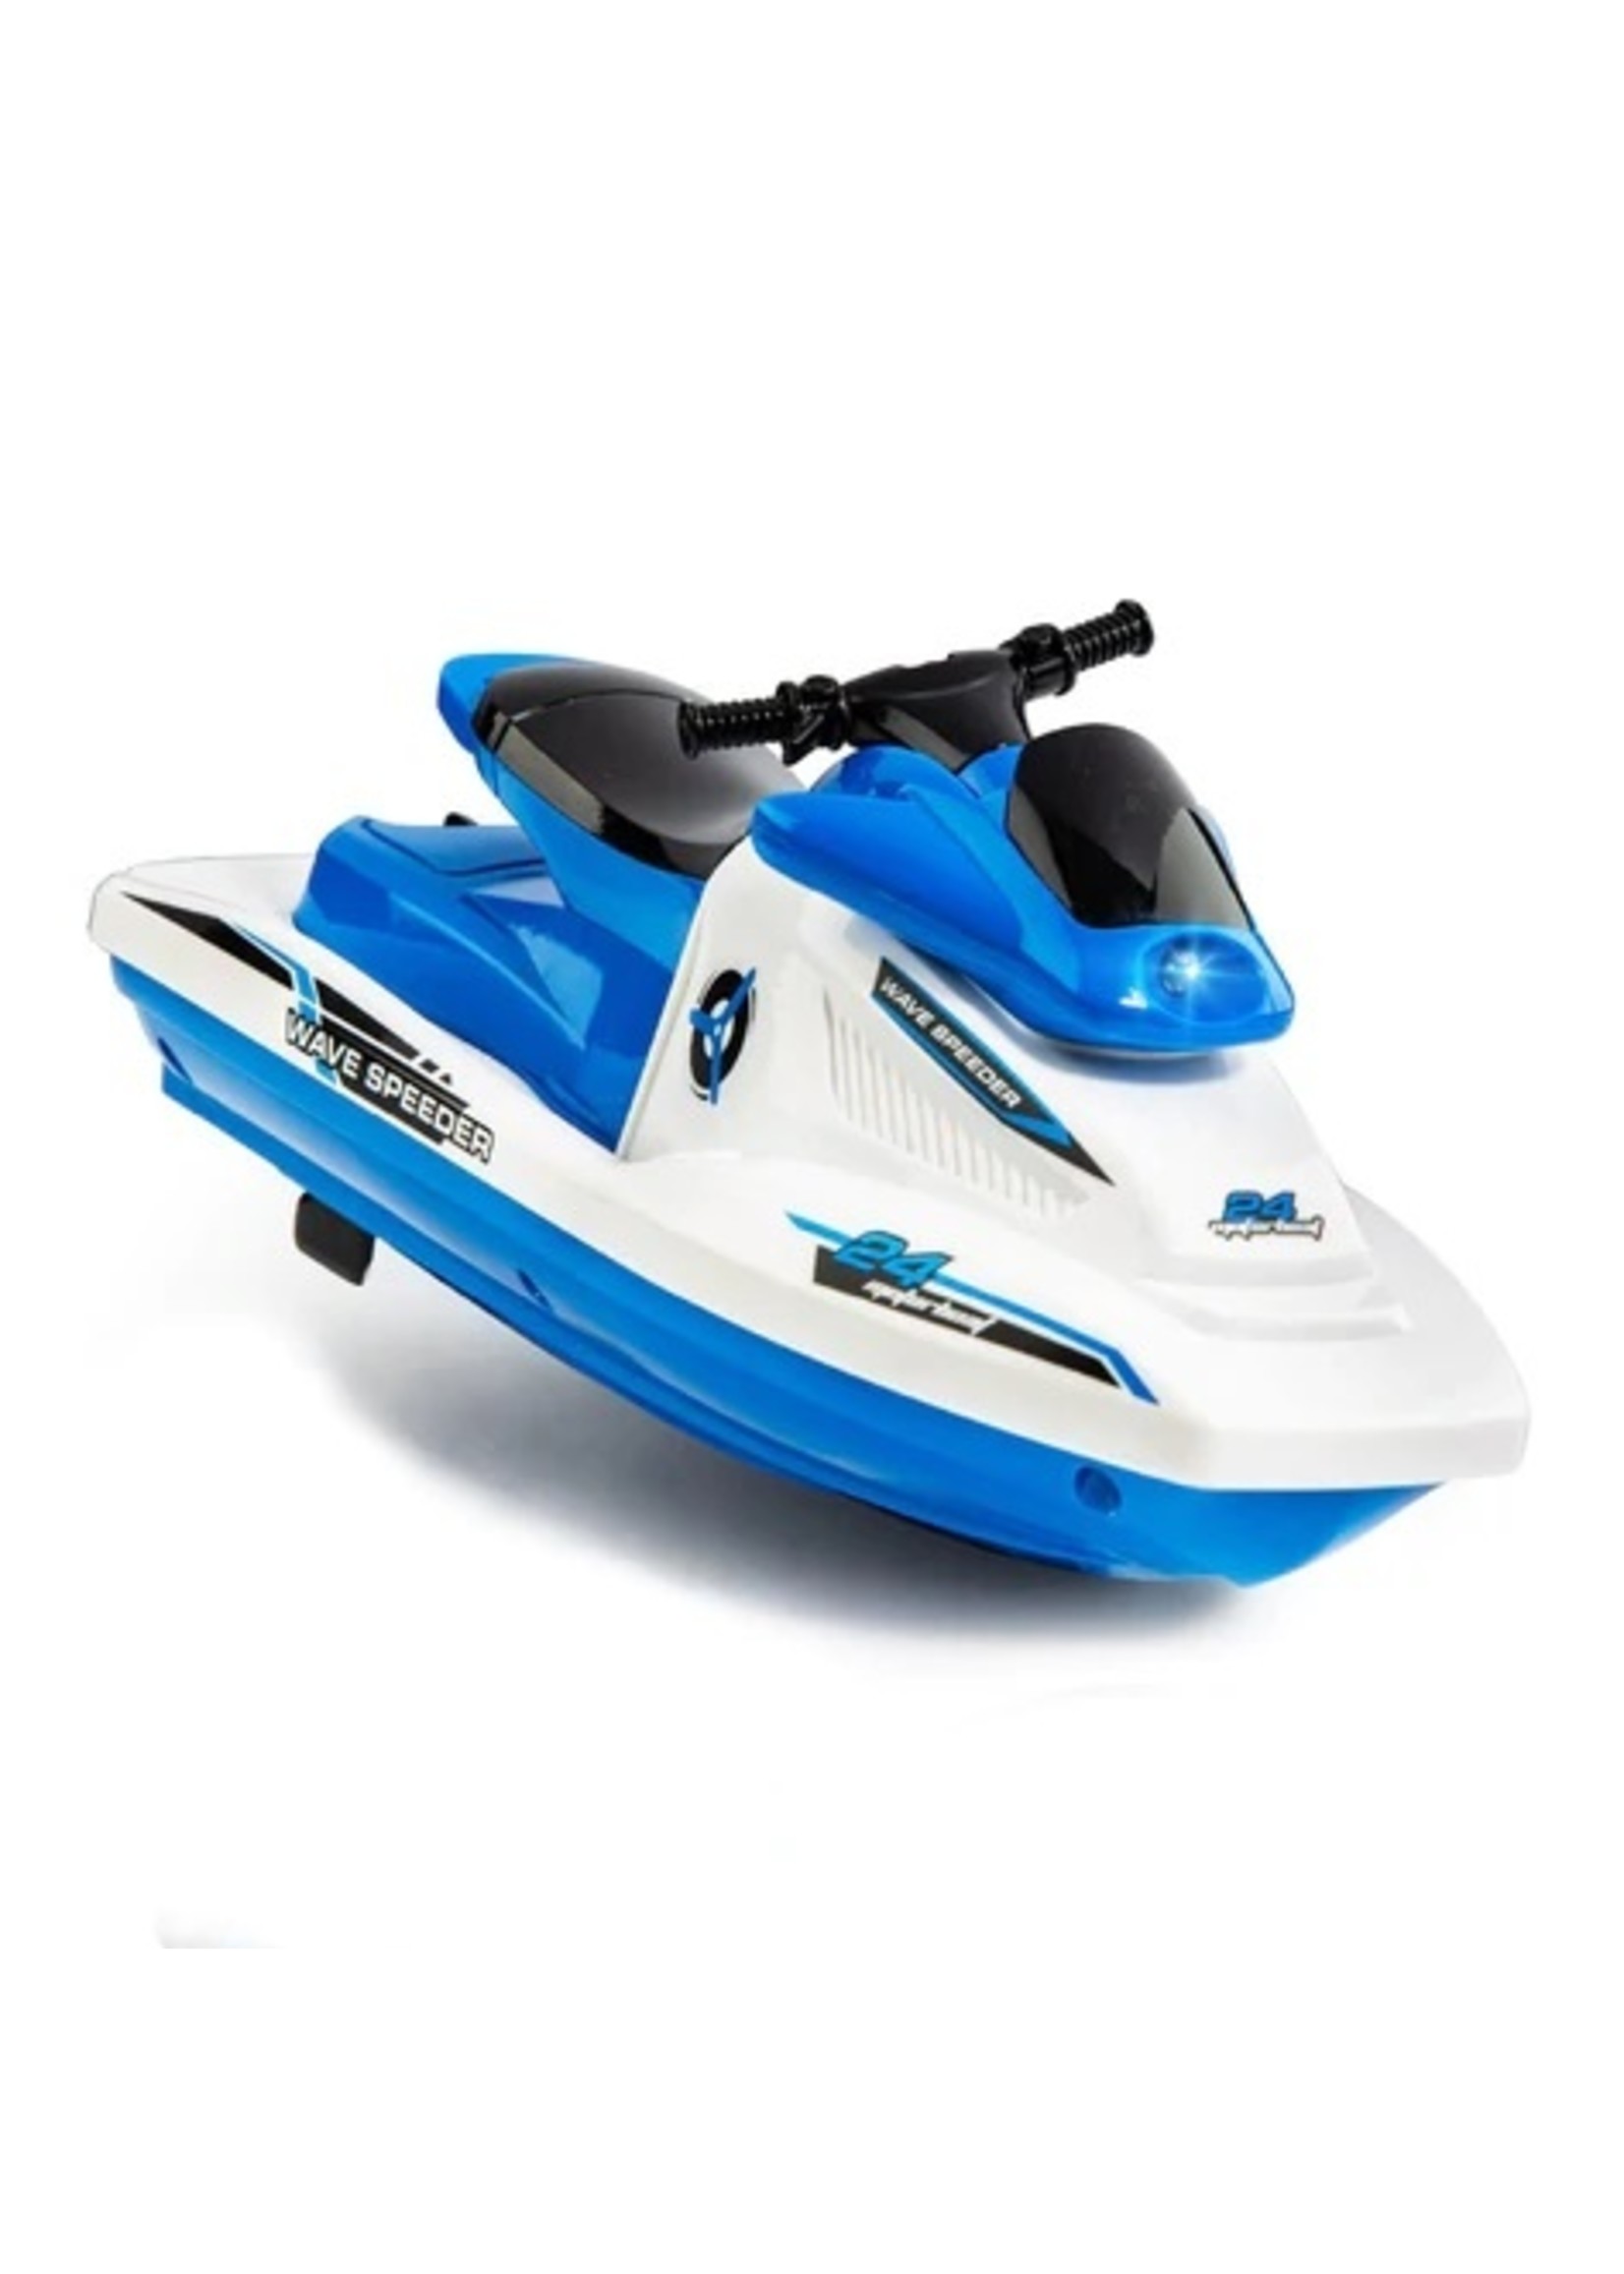 USA Toyz Wave Speeder - Blue